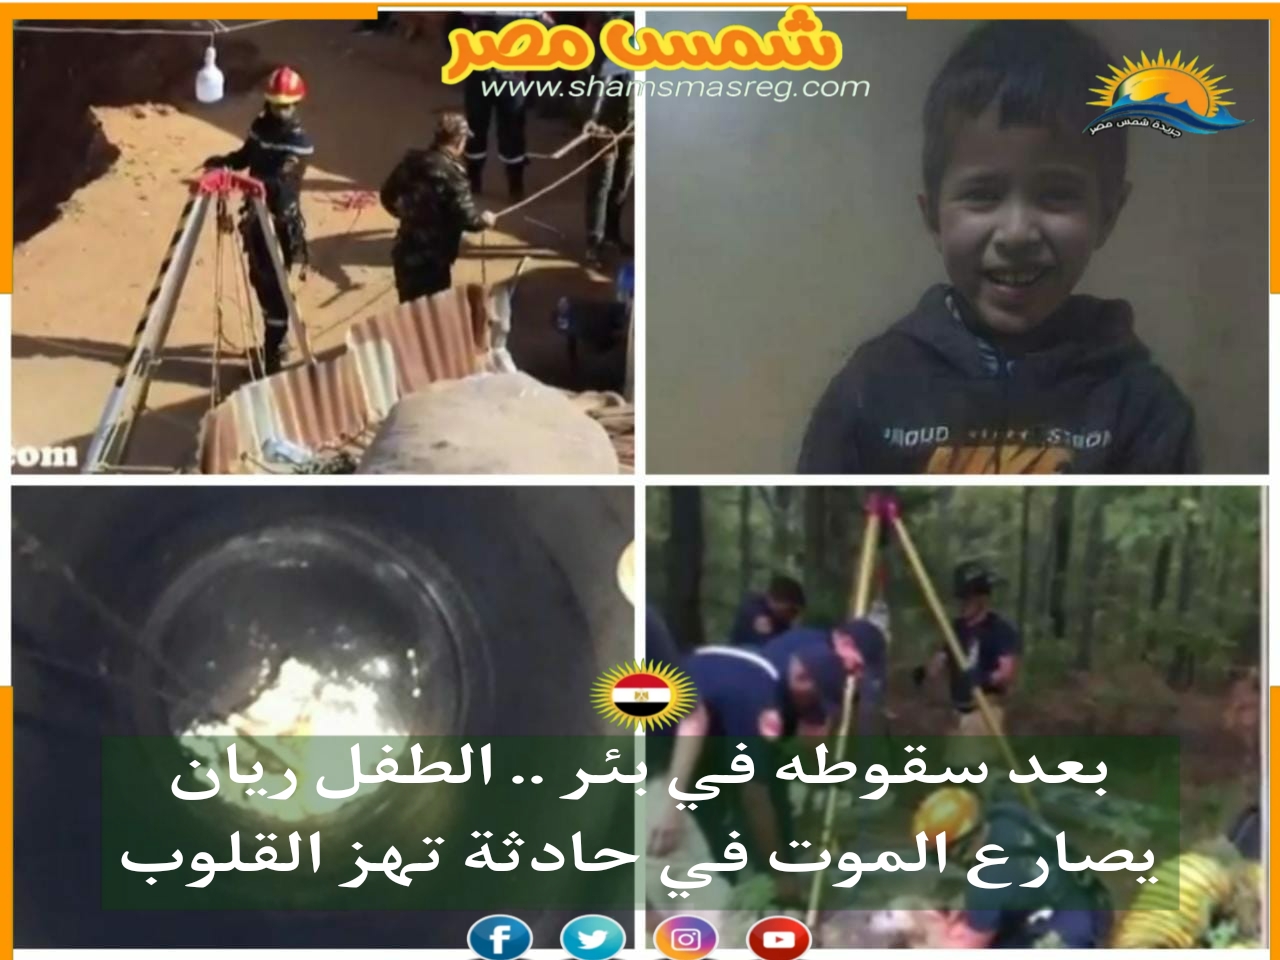 |شمس مصر|.. بعد سقوطه في بئر.. الطفل ريان يصارع الموت في حادثة تهز القلوب.